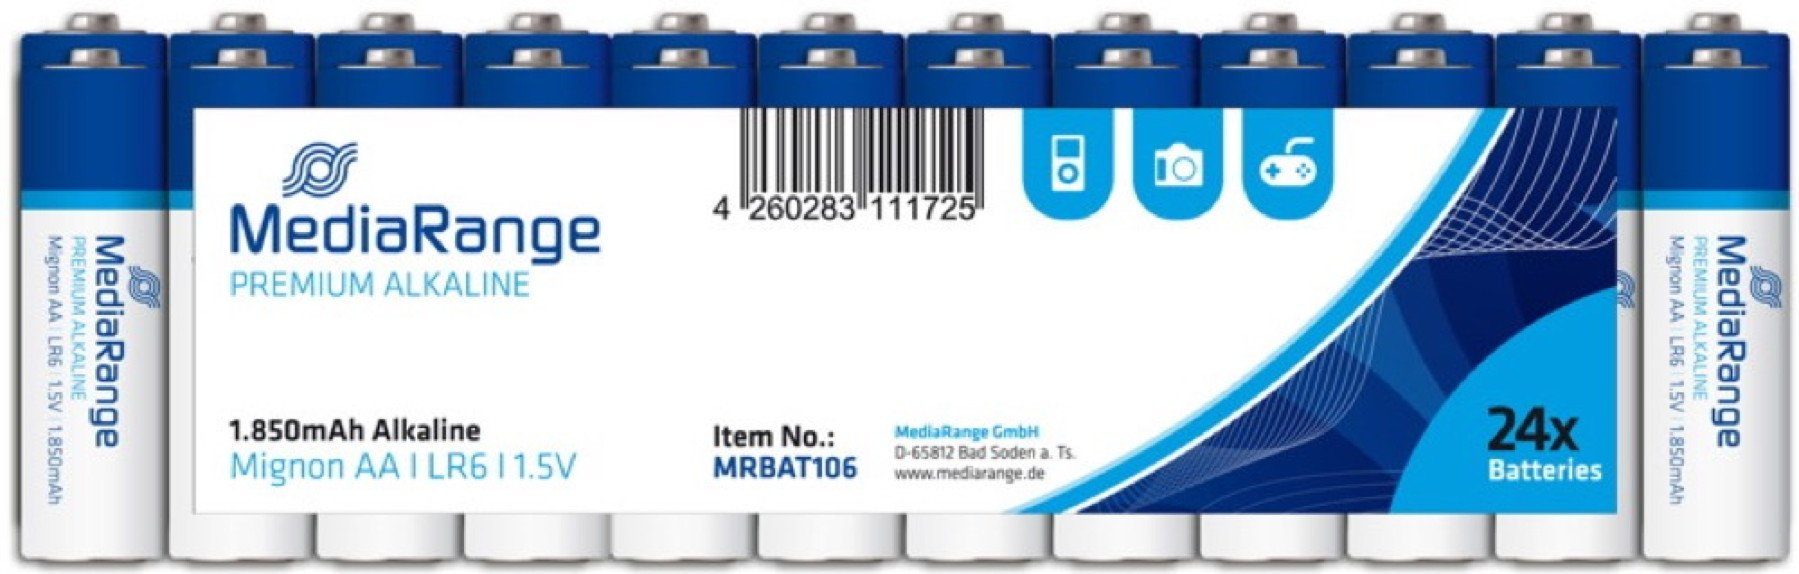 Mediarange 24 Mediarange Premium AA / Mignon Alkaline Batterien in 24er Folie Batterie